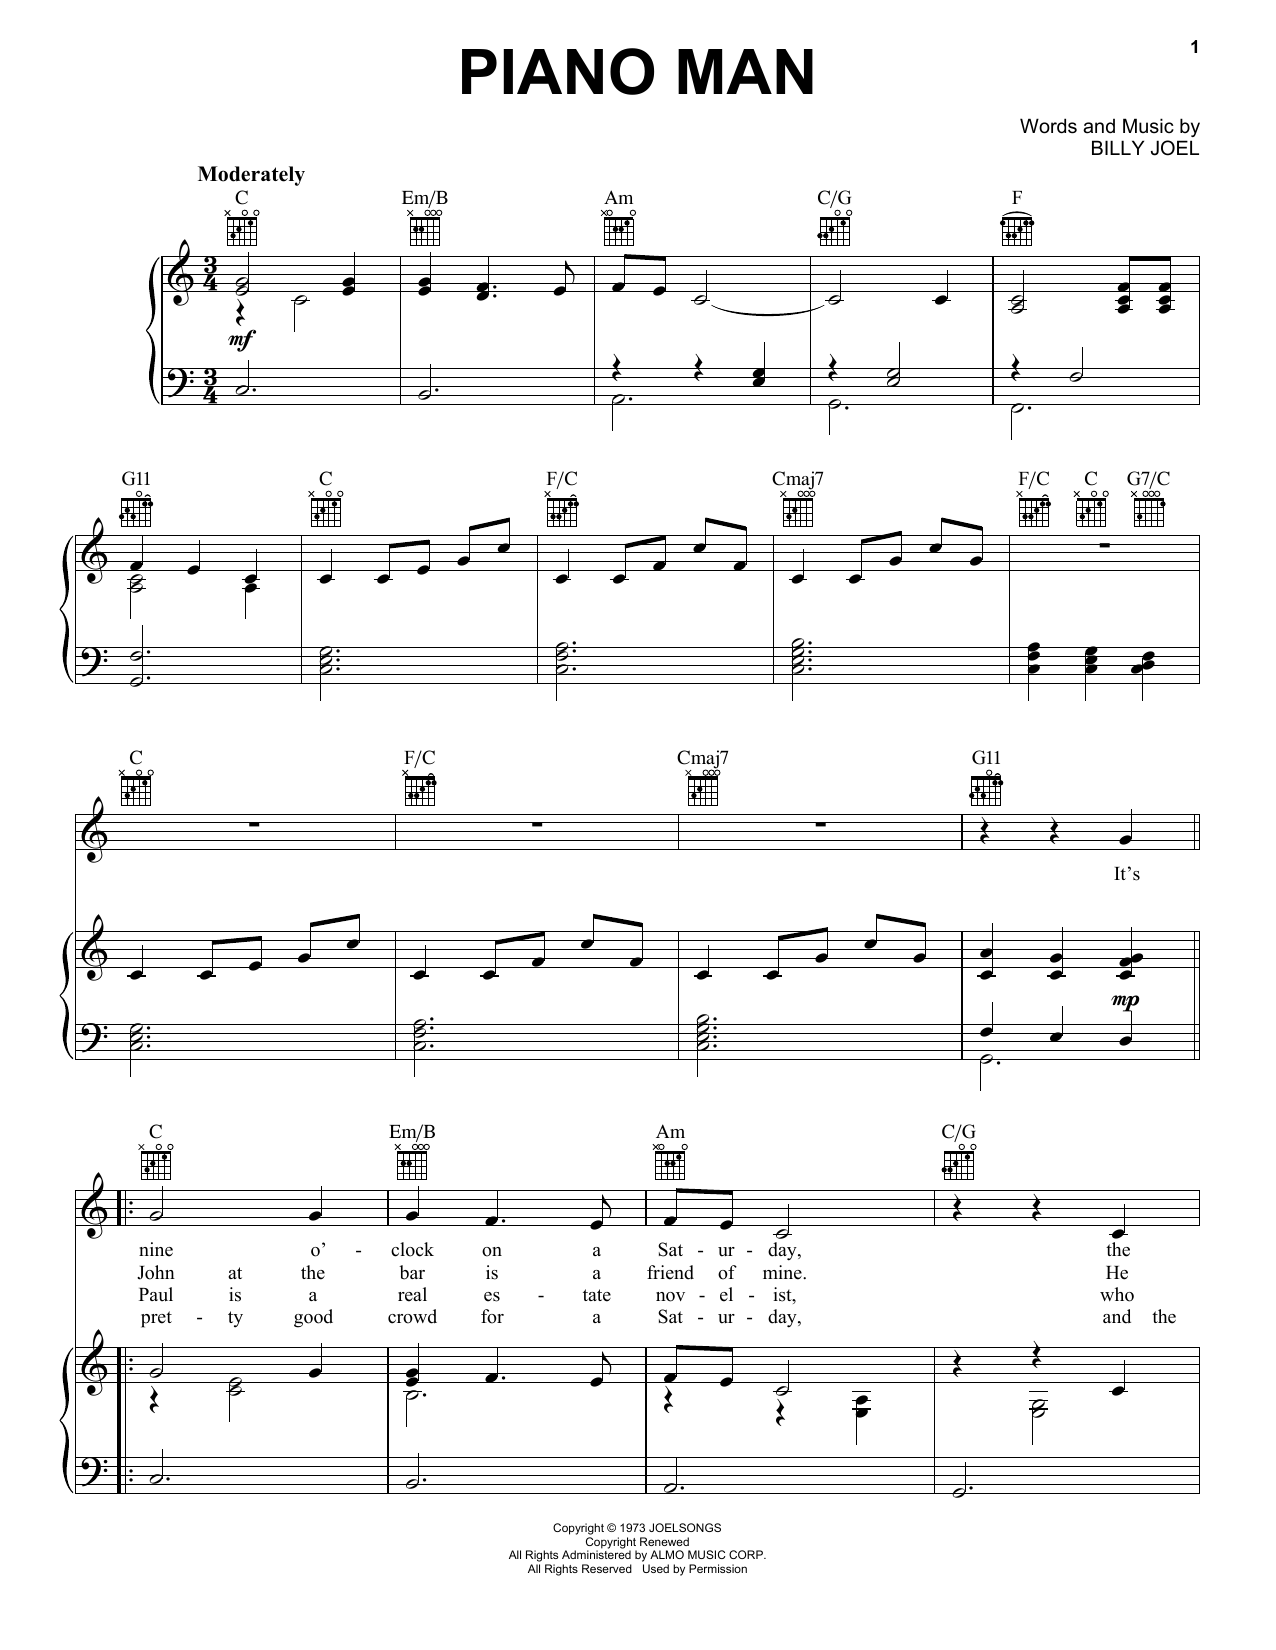 Billy Joel "Piano Man" Sheet Music Notes | Download Printable PDF Score